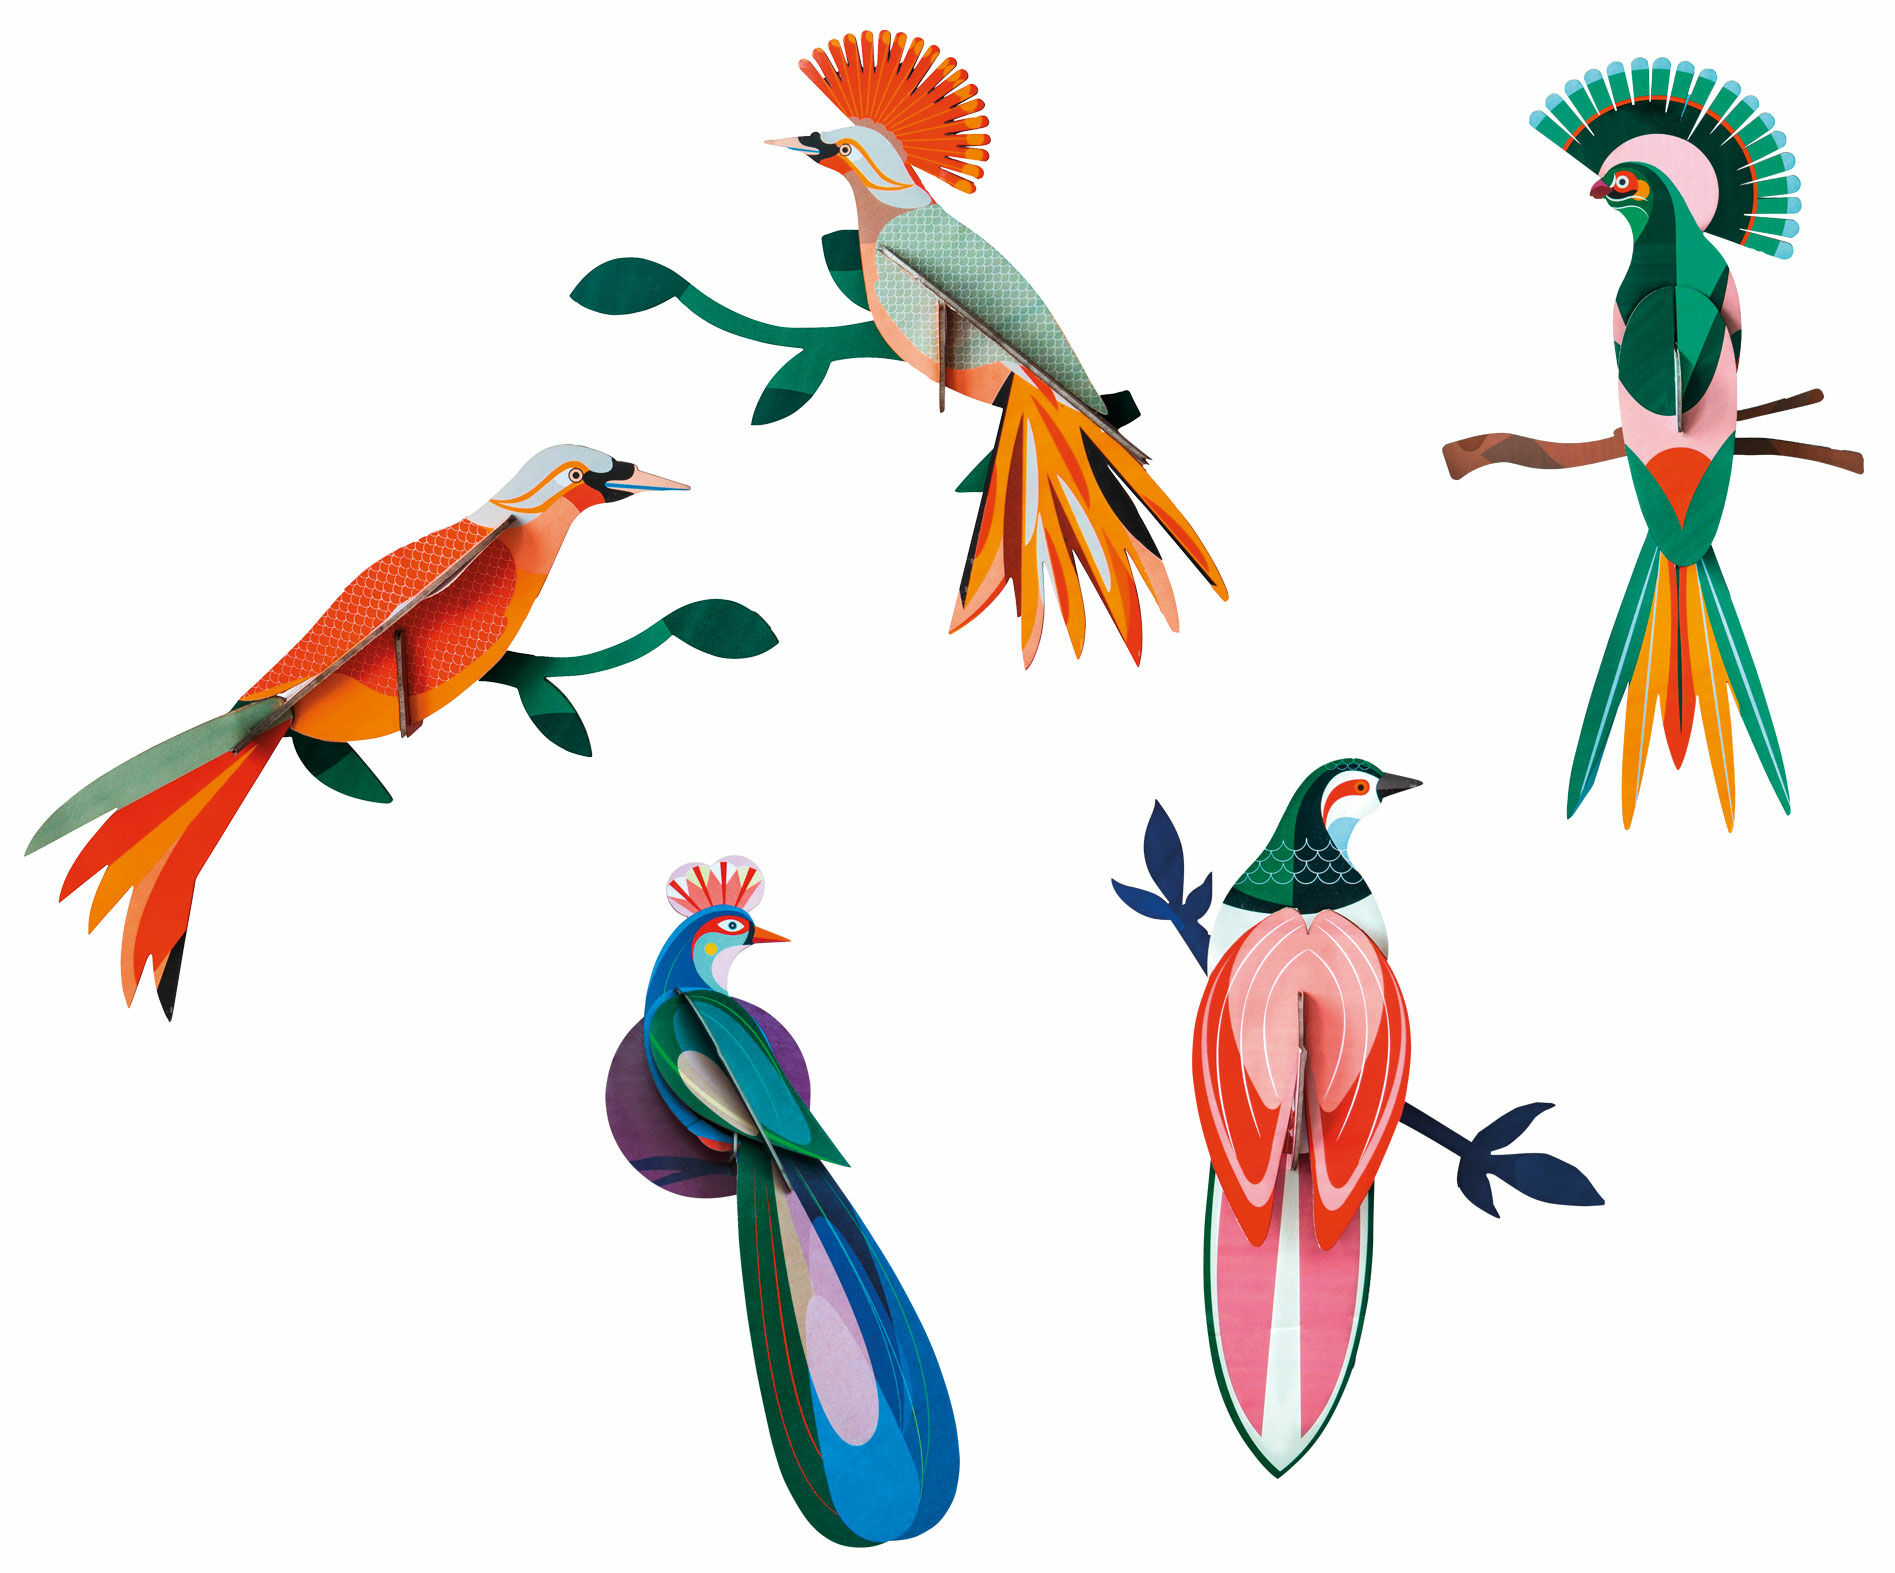 3D wandobjecten "Paradijsvogels" van gerecycled karton, DIY, set van 5 von studio ROOF